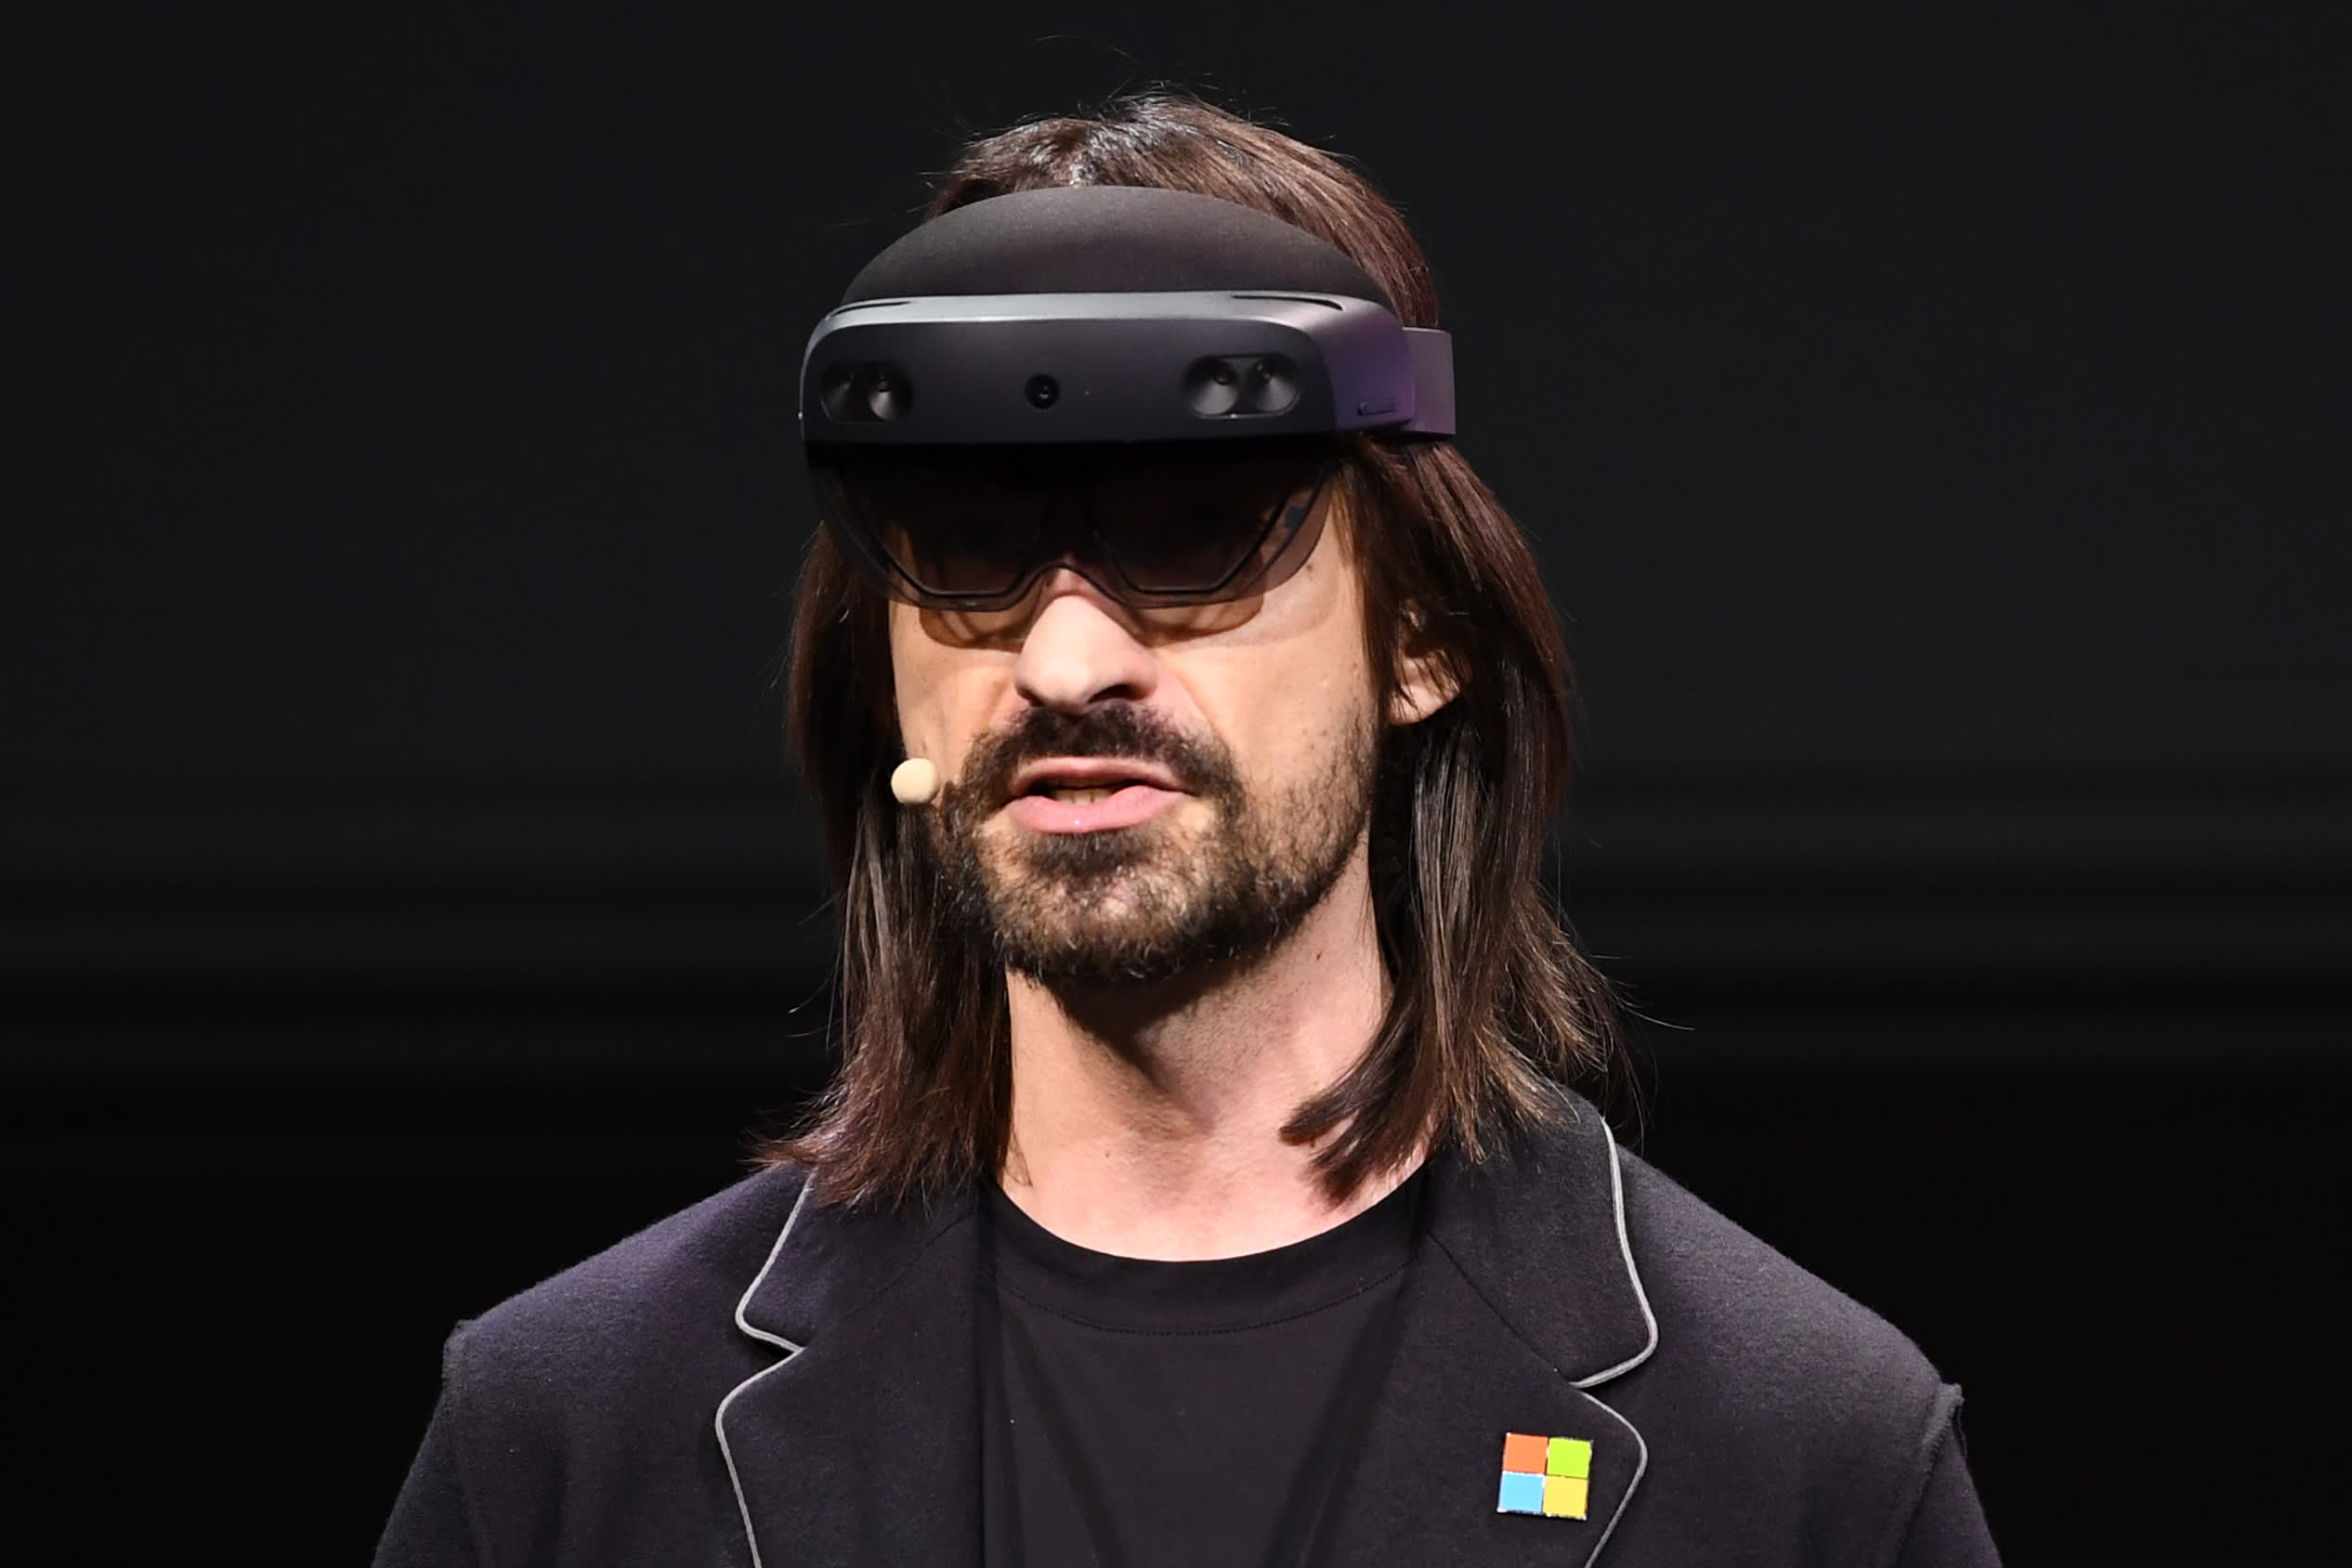 Руководитель разработки очков HoloLens уволился из Microsoft